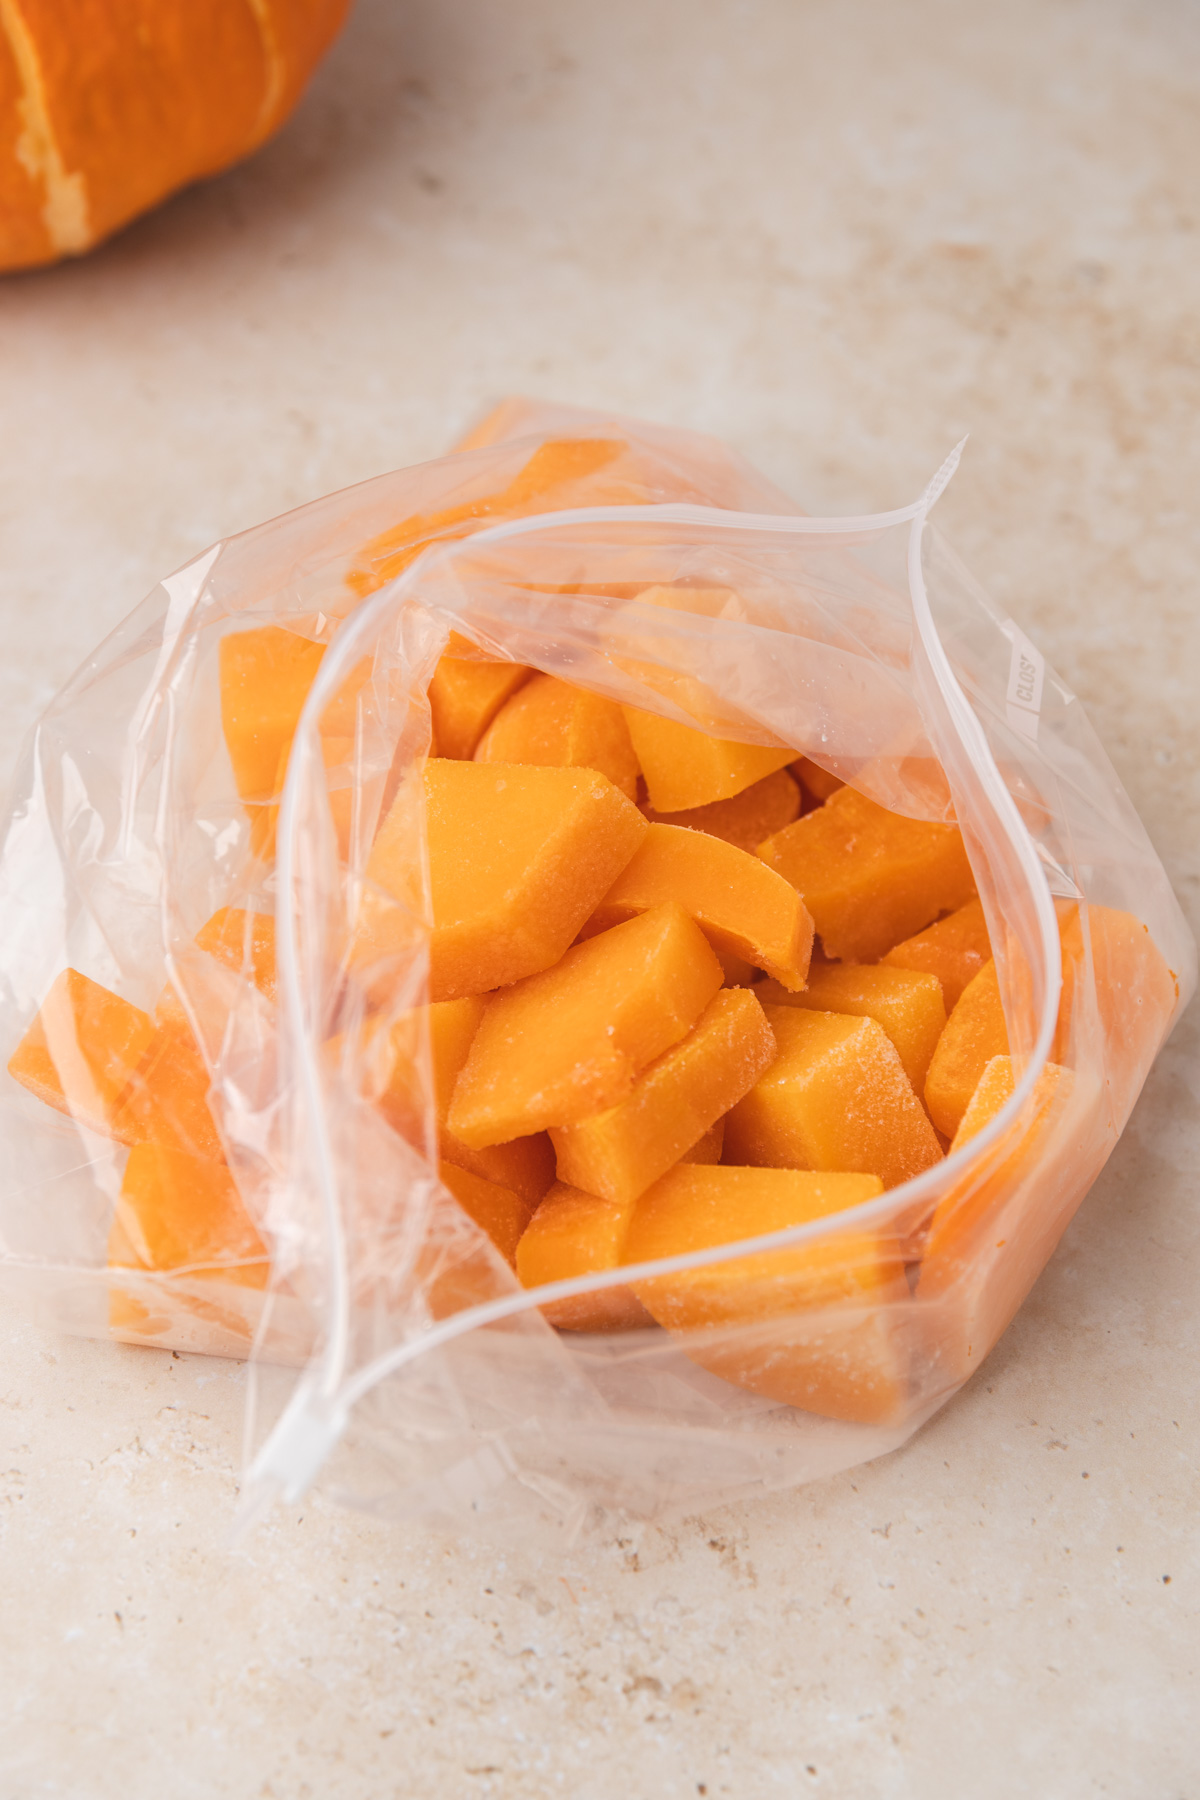 cubed buternut squash in a freezer bag.